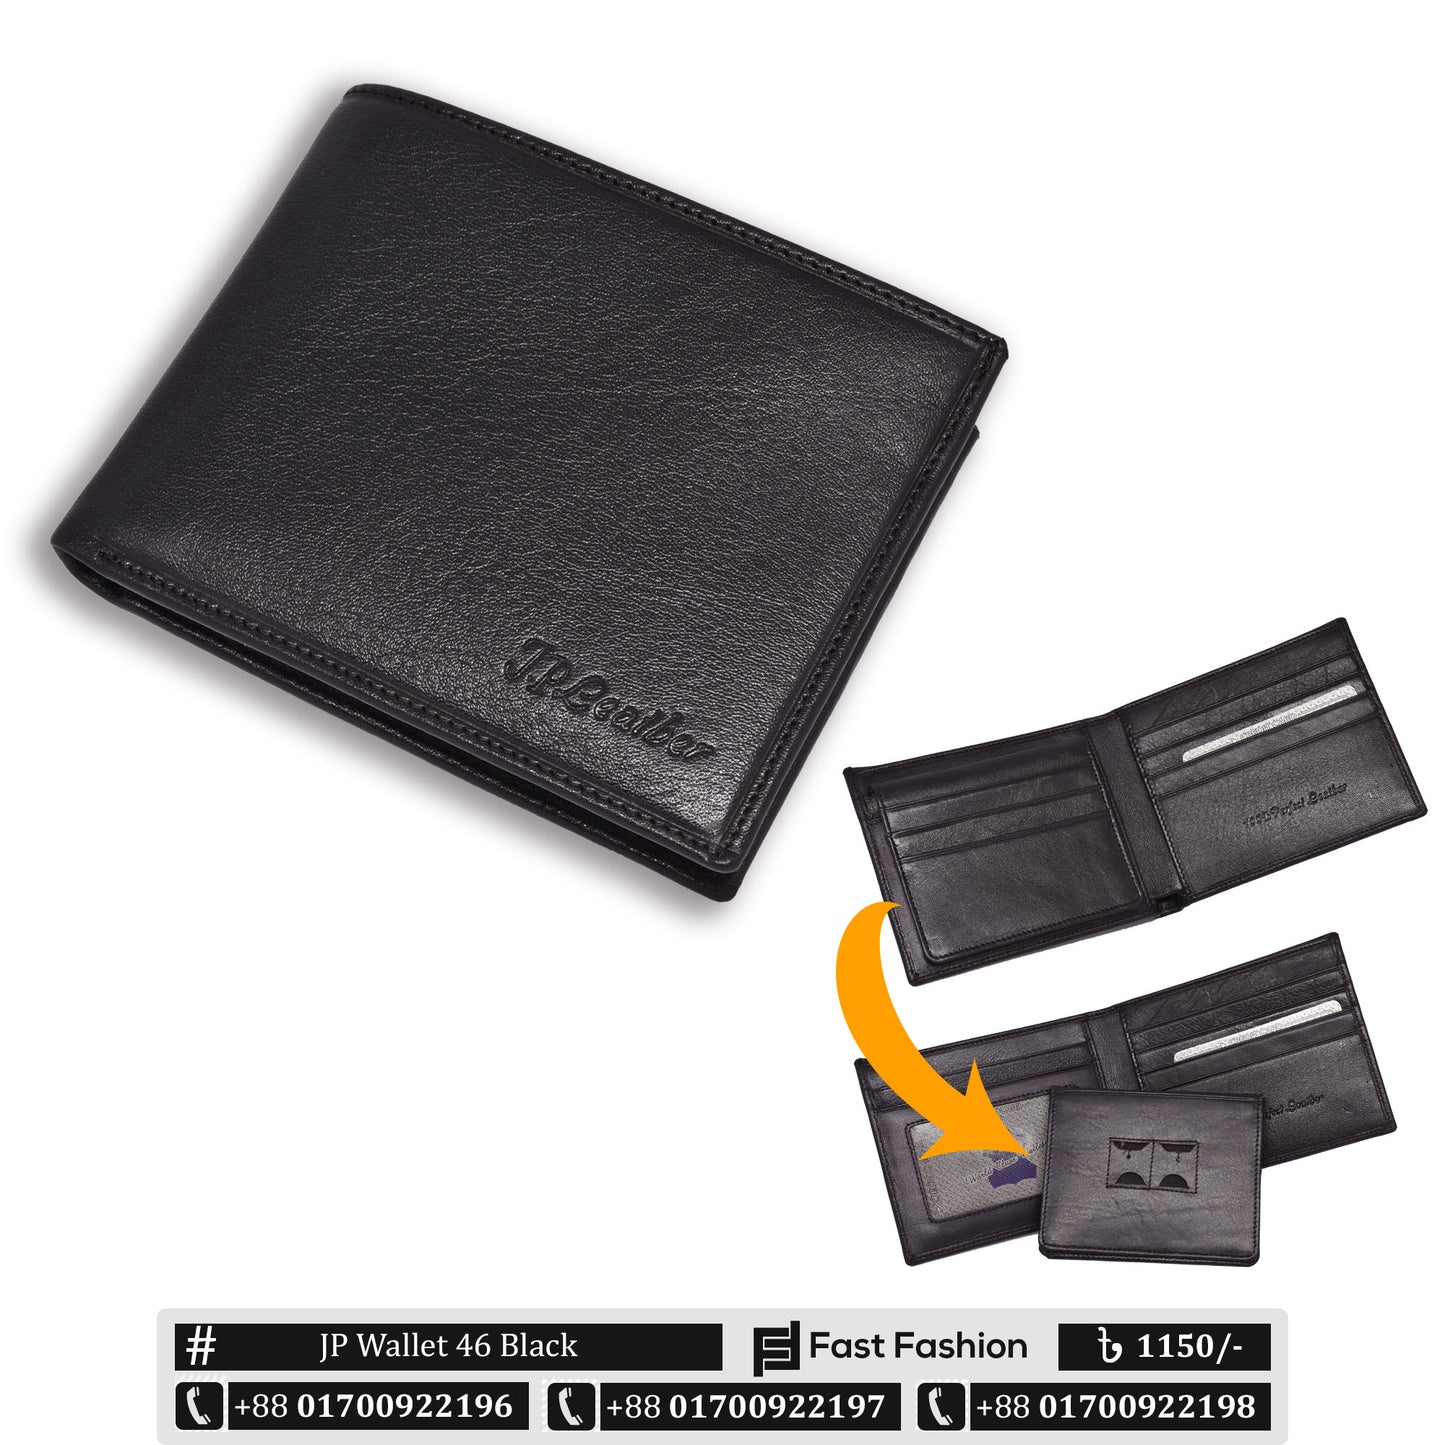 Original Leather Wallet Pocket Size | JP Wallet 46 Black | Online Shopping in Bangladesh